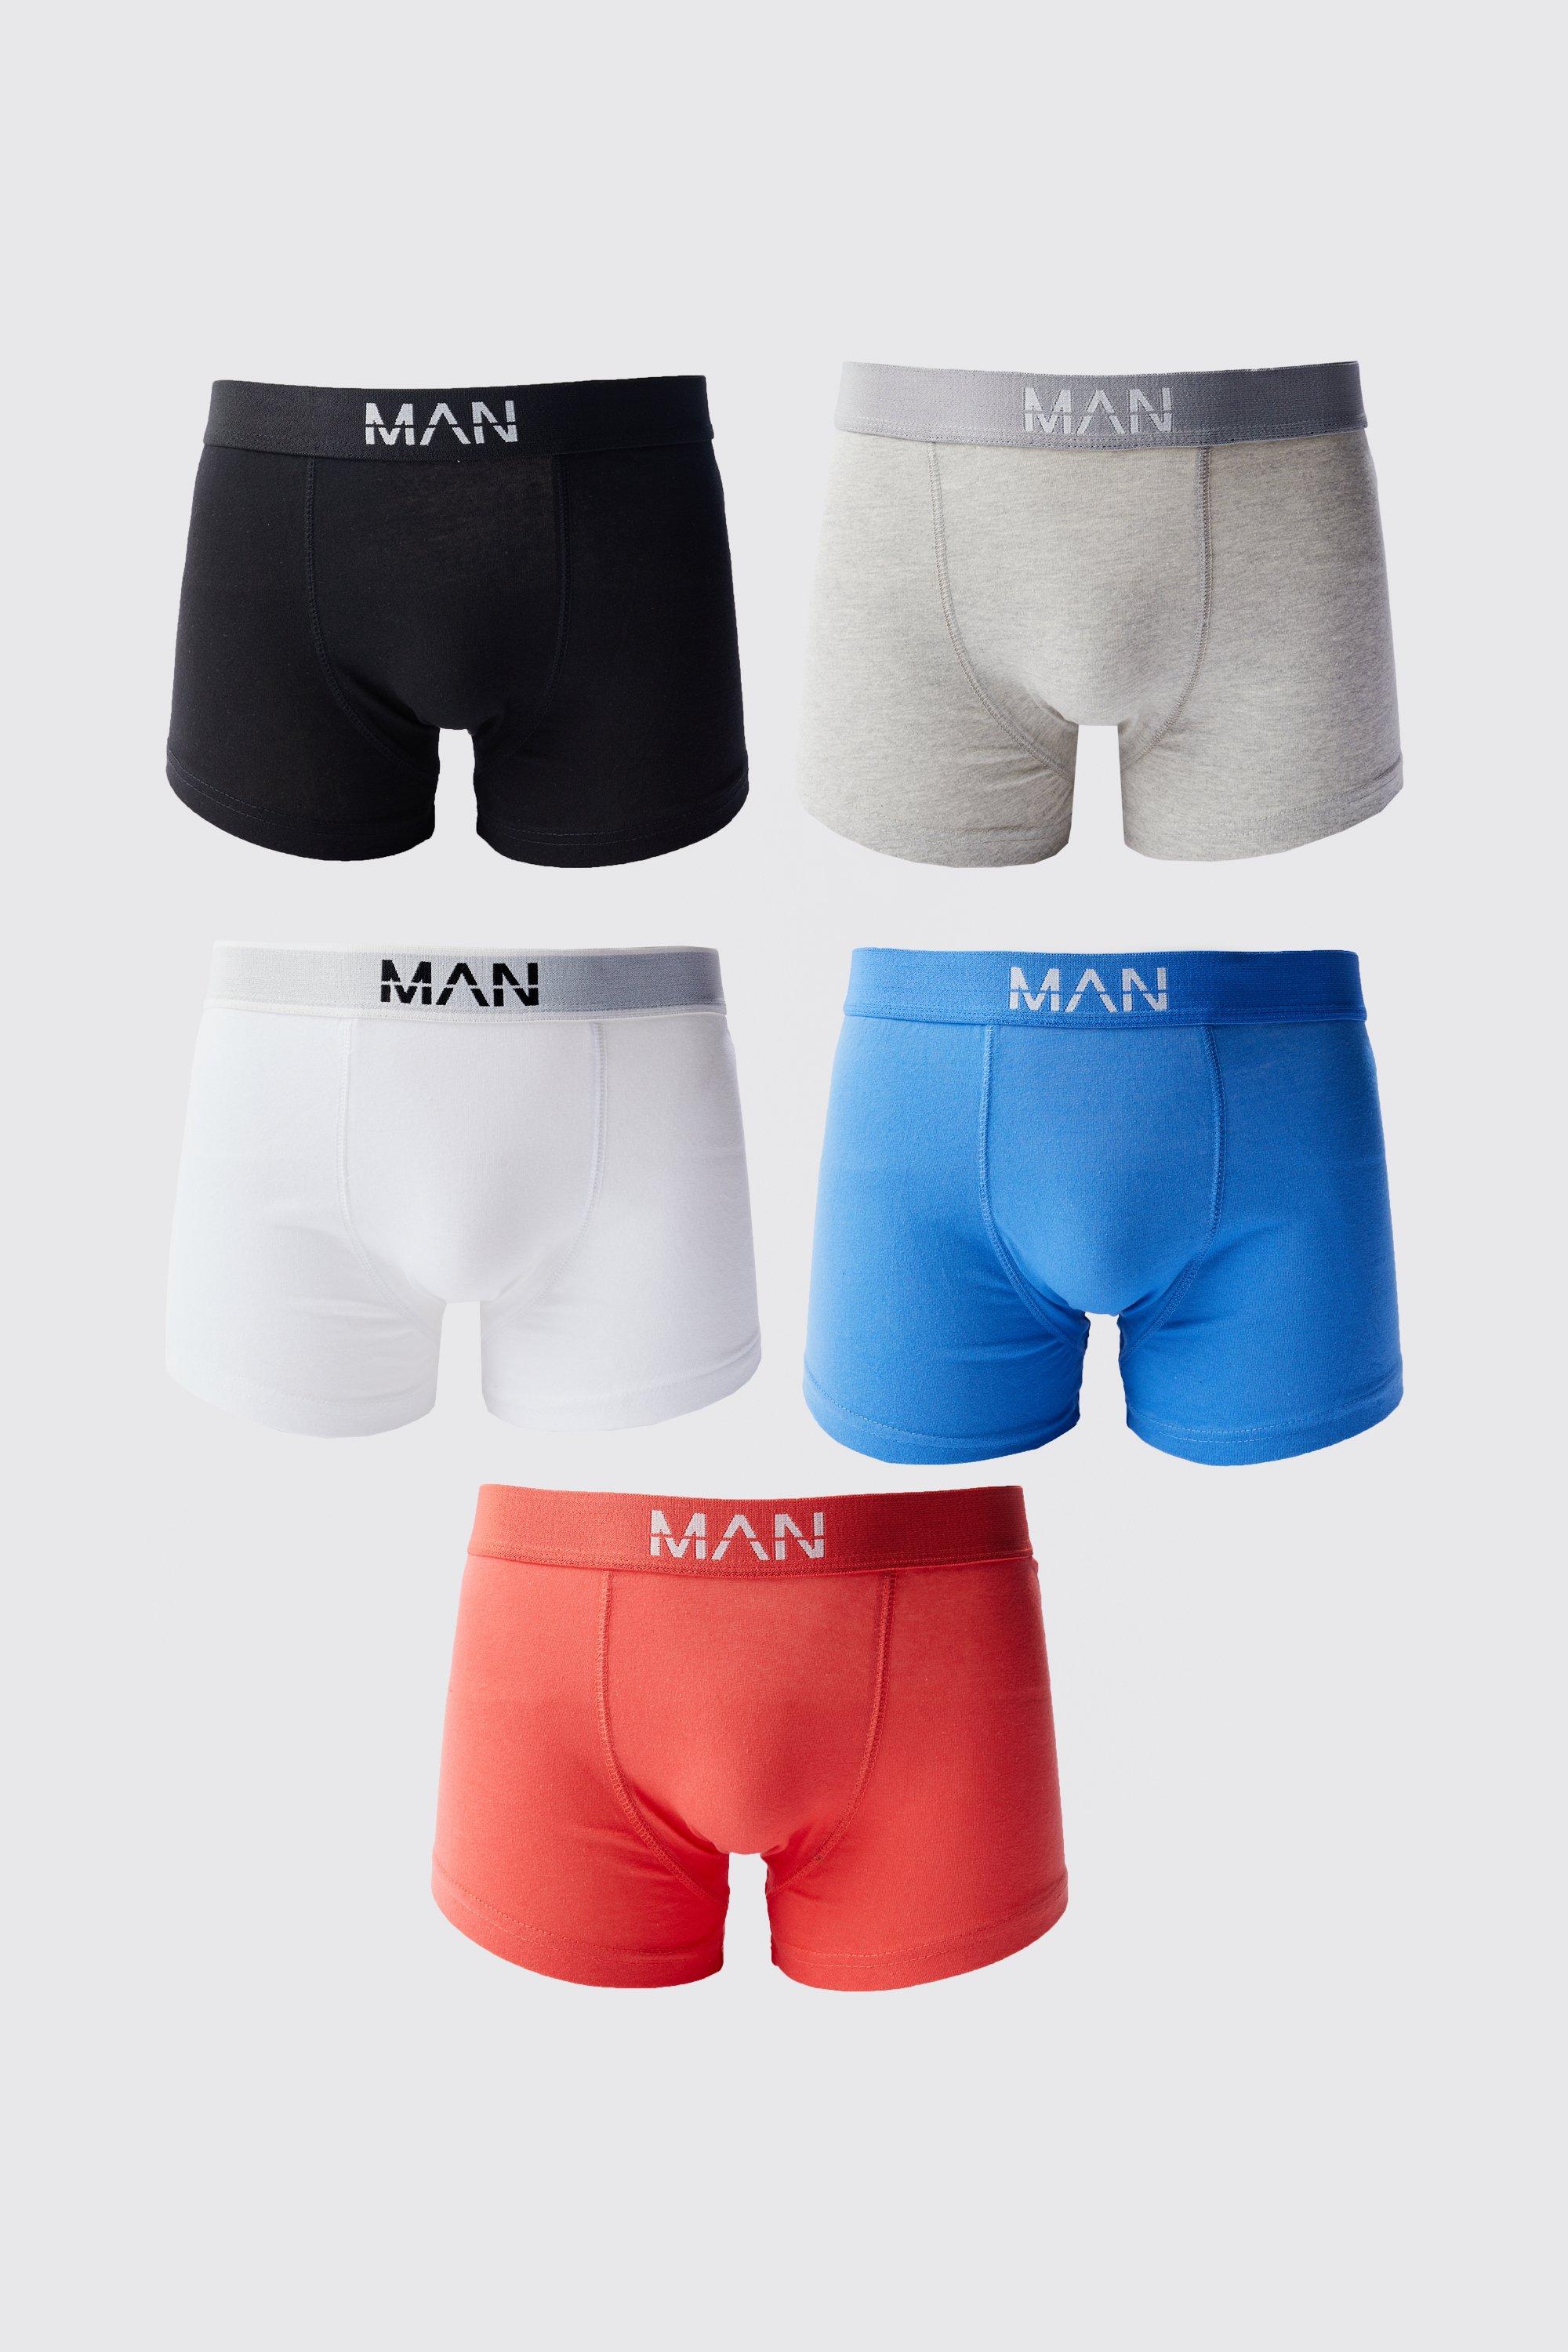 lot de 5 boxers colorés - man homme - multicolore - s, multicolore